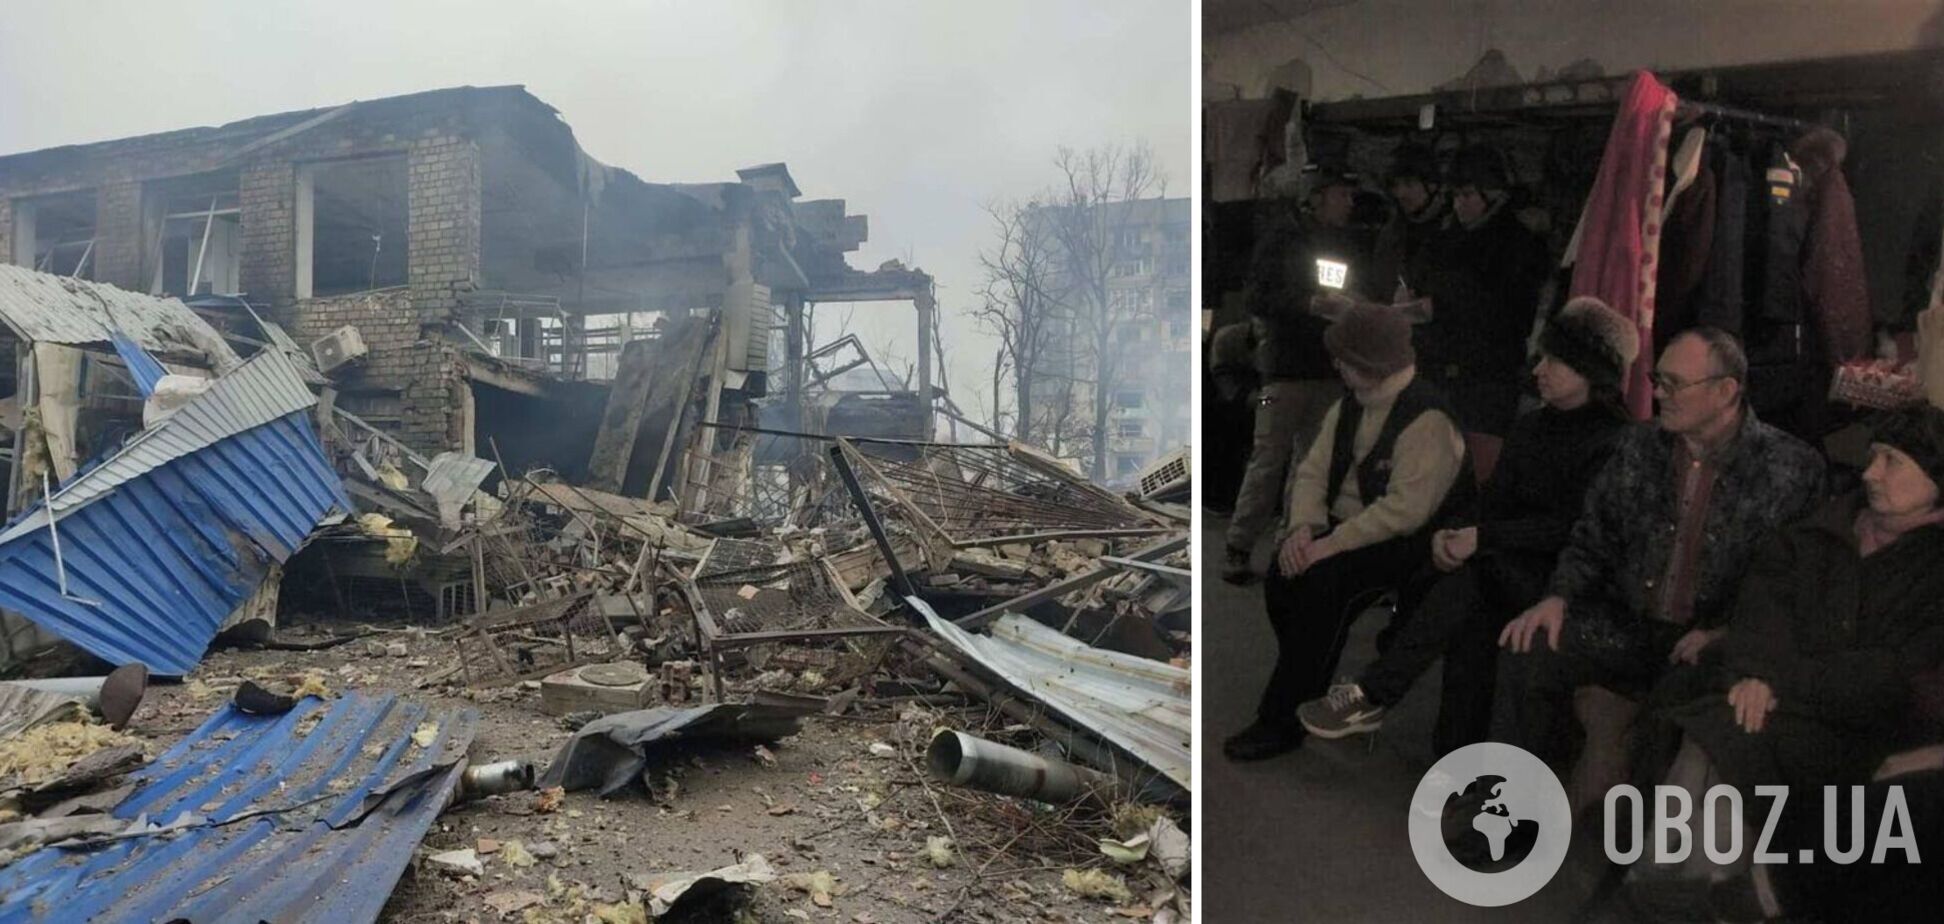 Целенаправленно бьют в места, где есть люди: оккупанты ударили по укрытиям в Авдеевке, есть жертвы. Фото